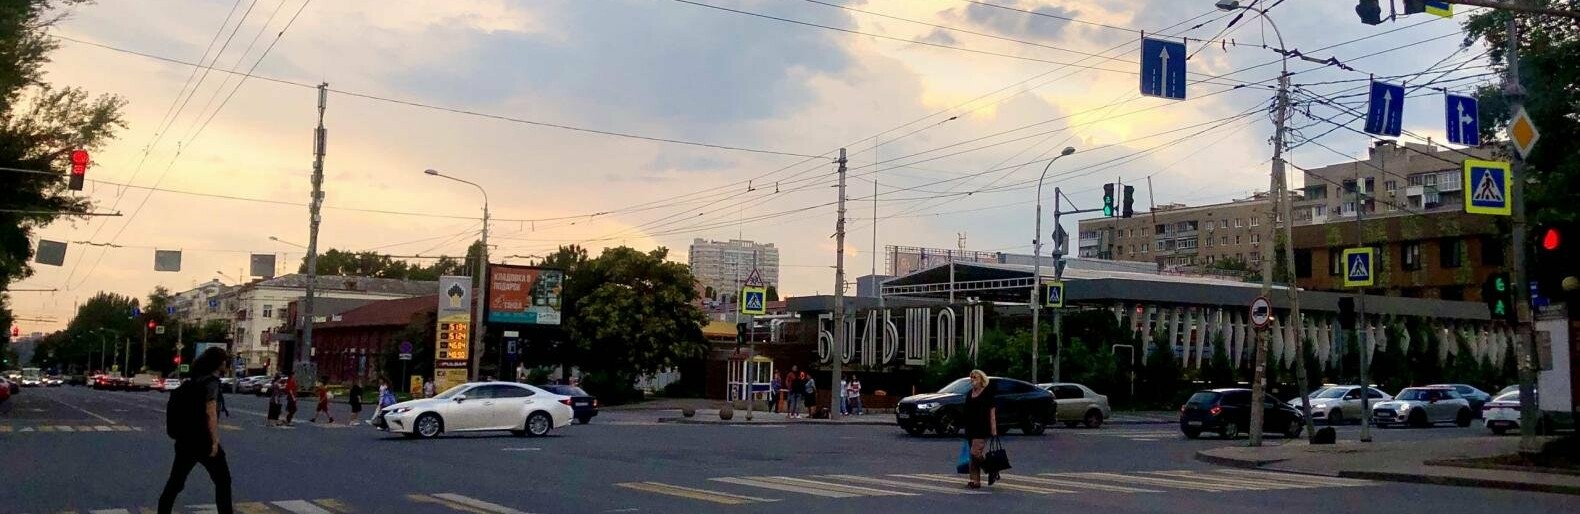 Новый удар от амброзии, запрет на «короеда», рост средней зарплаты: итоги недели в Ростове